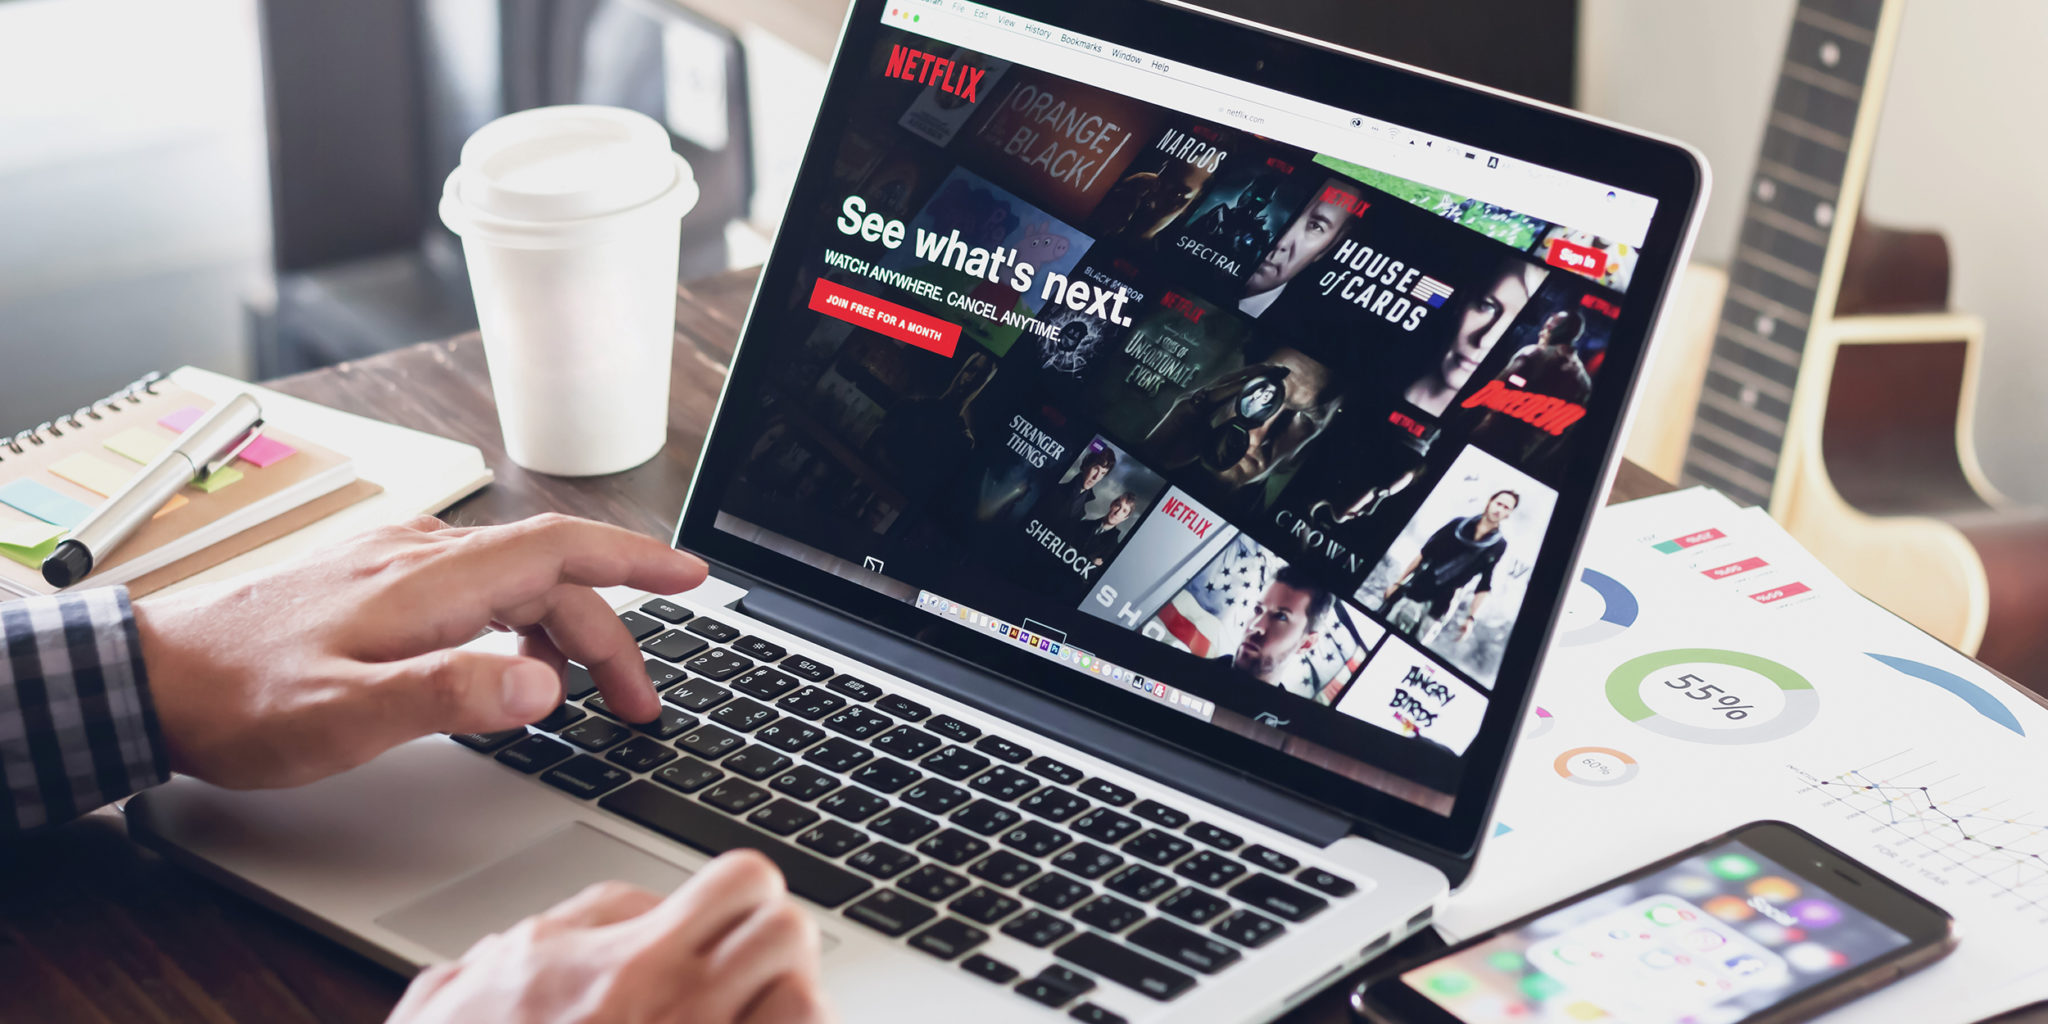 Netflix’e Ağustos 2019’da eklenecek dizi ve filmler